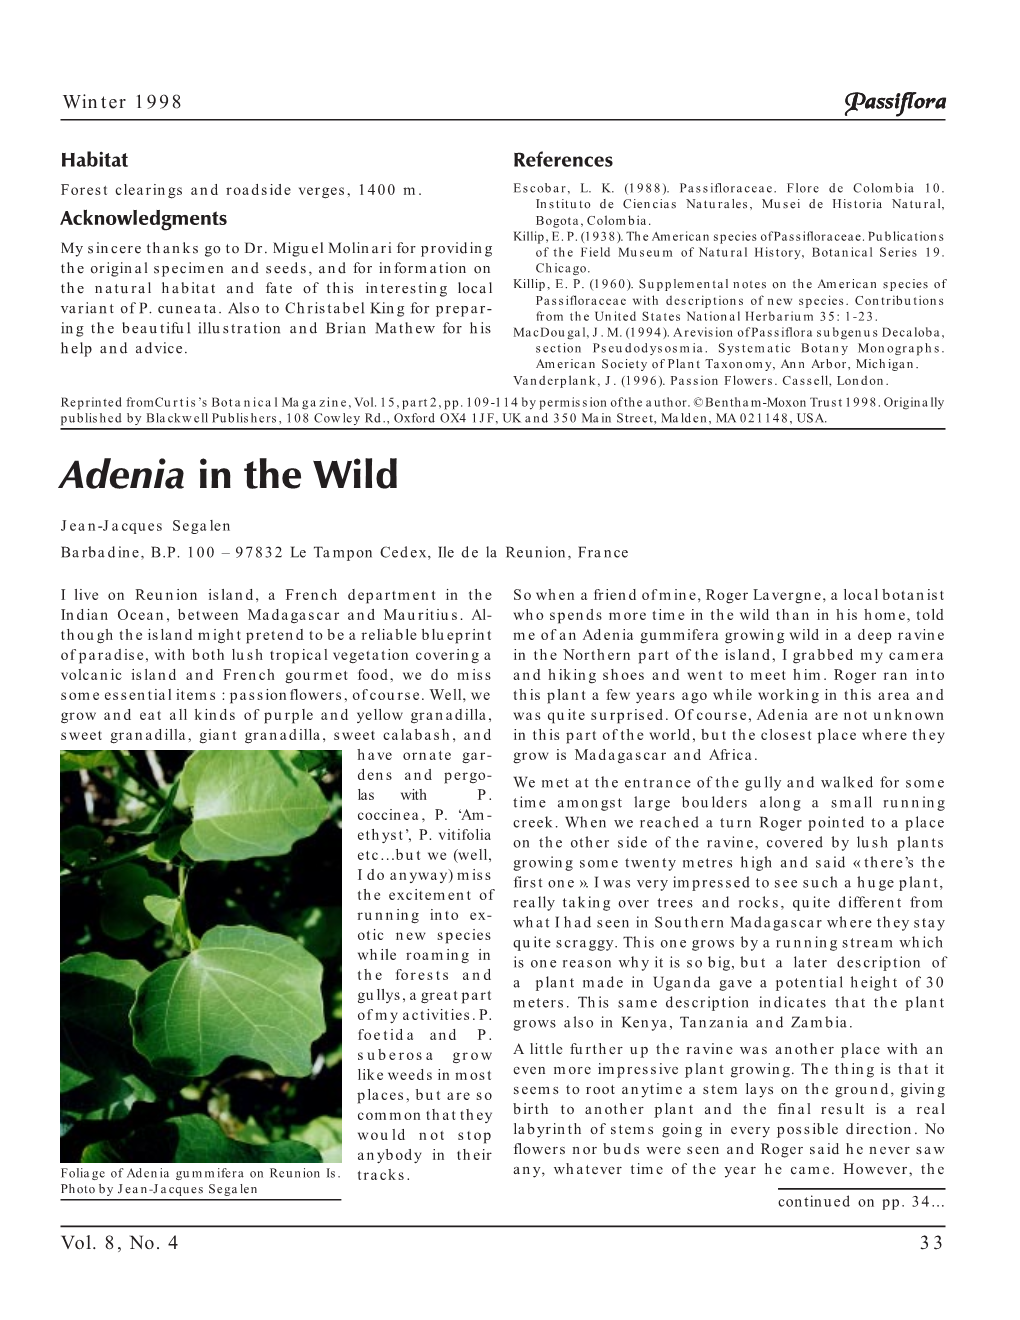 Adenia in the Wild